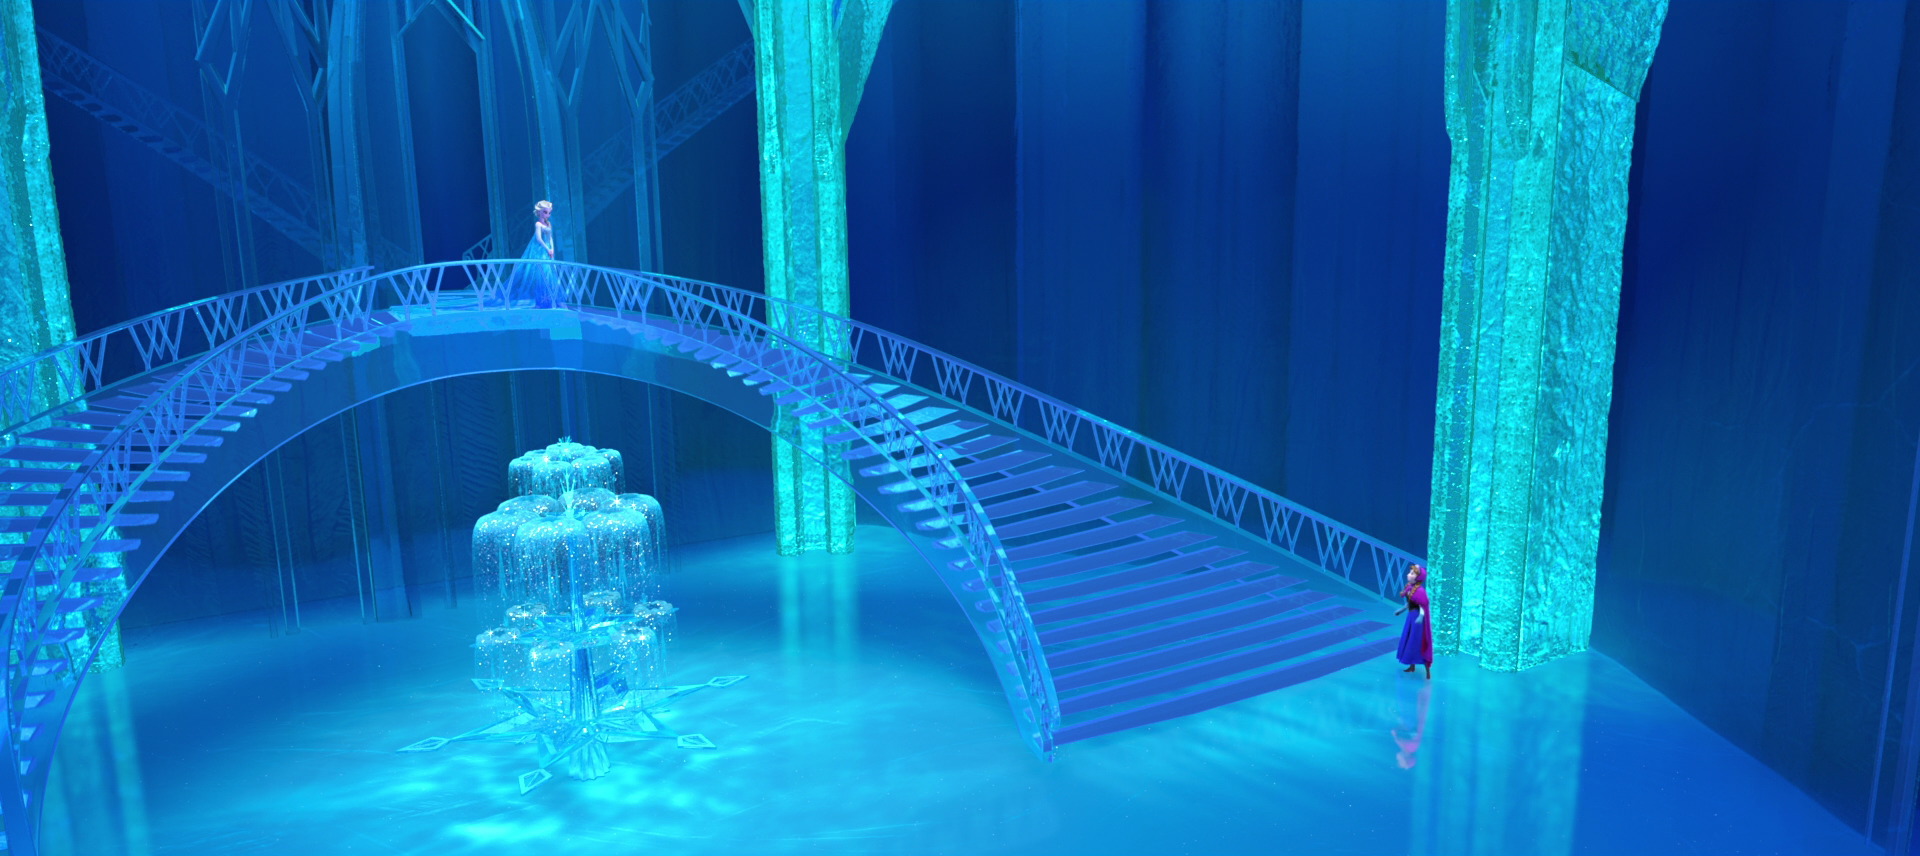 castillo hielo frozen disney fondos  Frozen castle, Disney frozen castle,  Frozen wallpaper